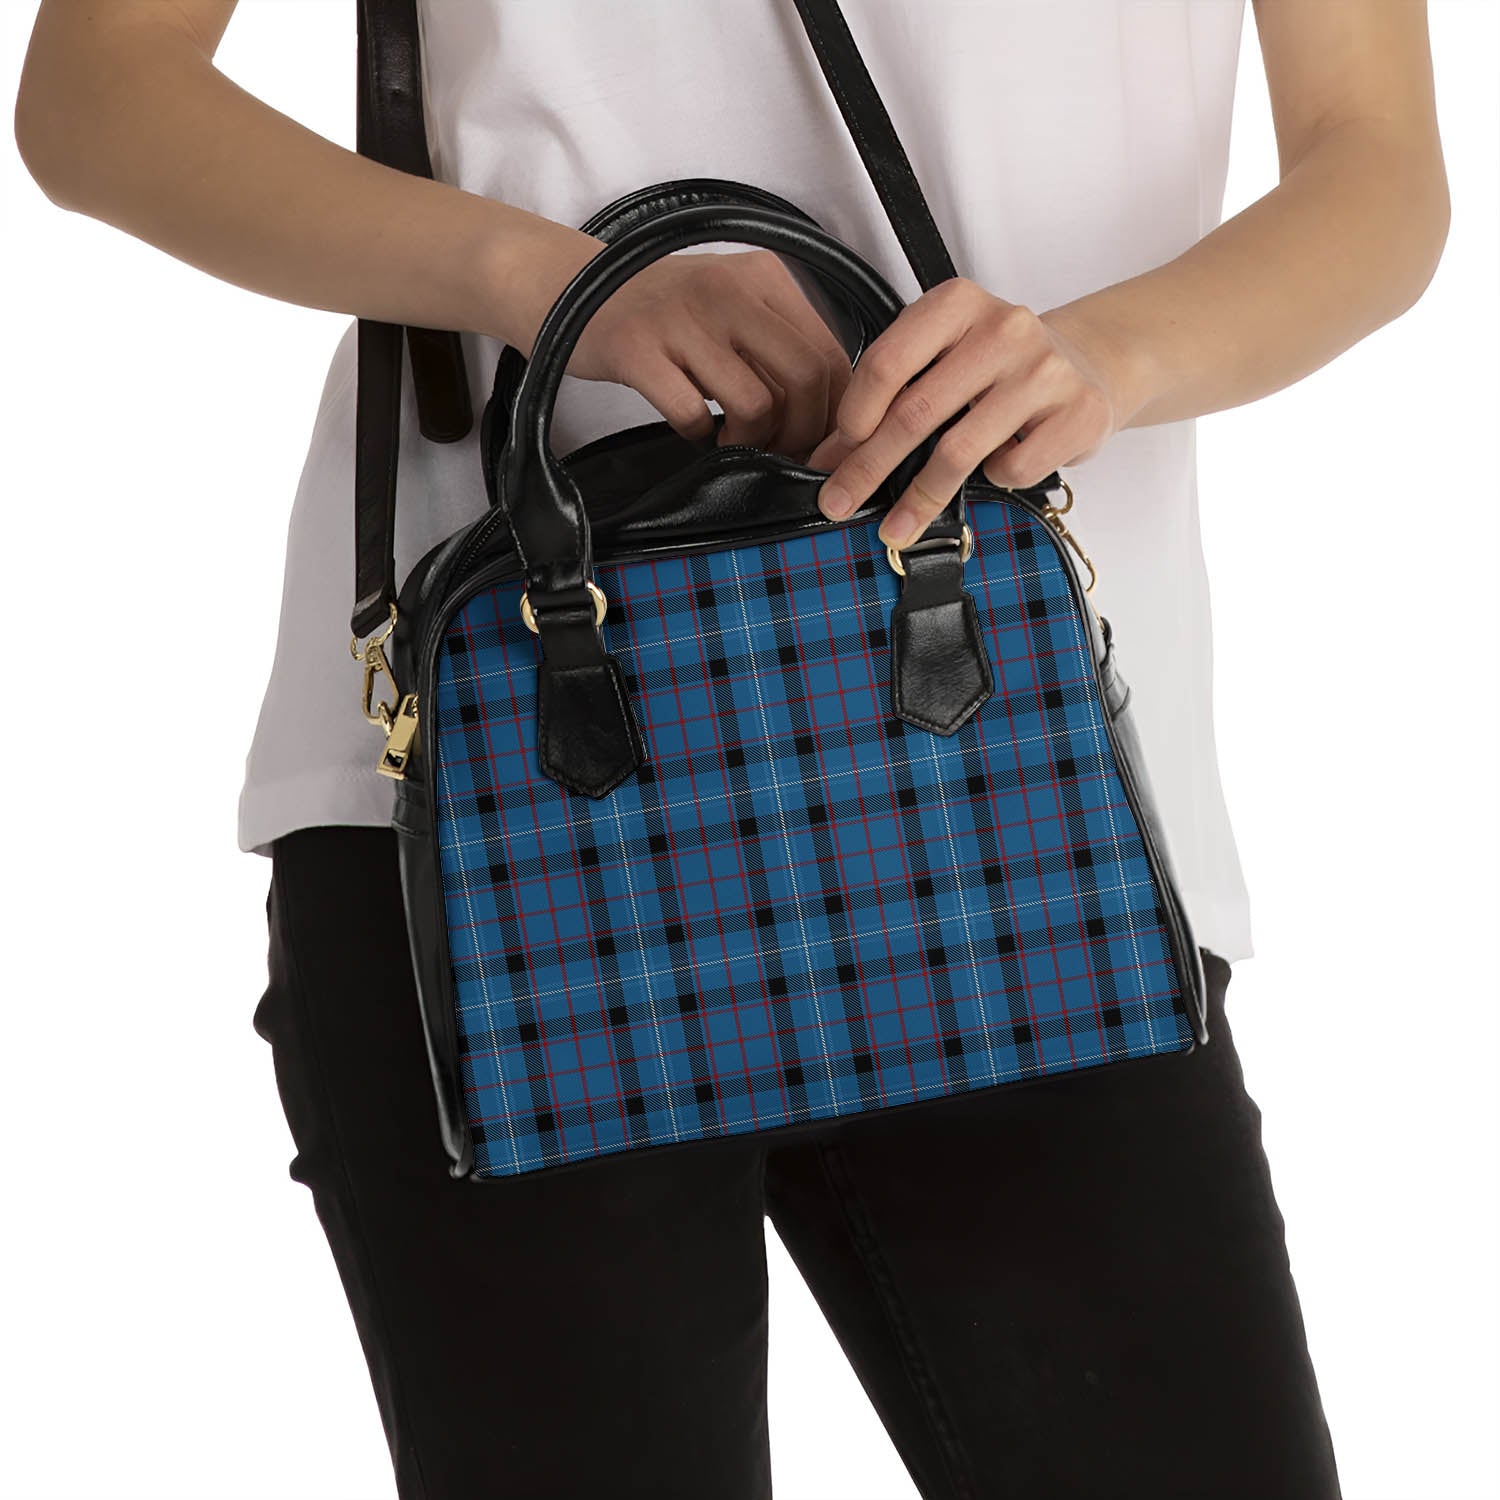 Fitzgerald Family Tartan Shoulder Handbags - Tartanvibesclothing